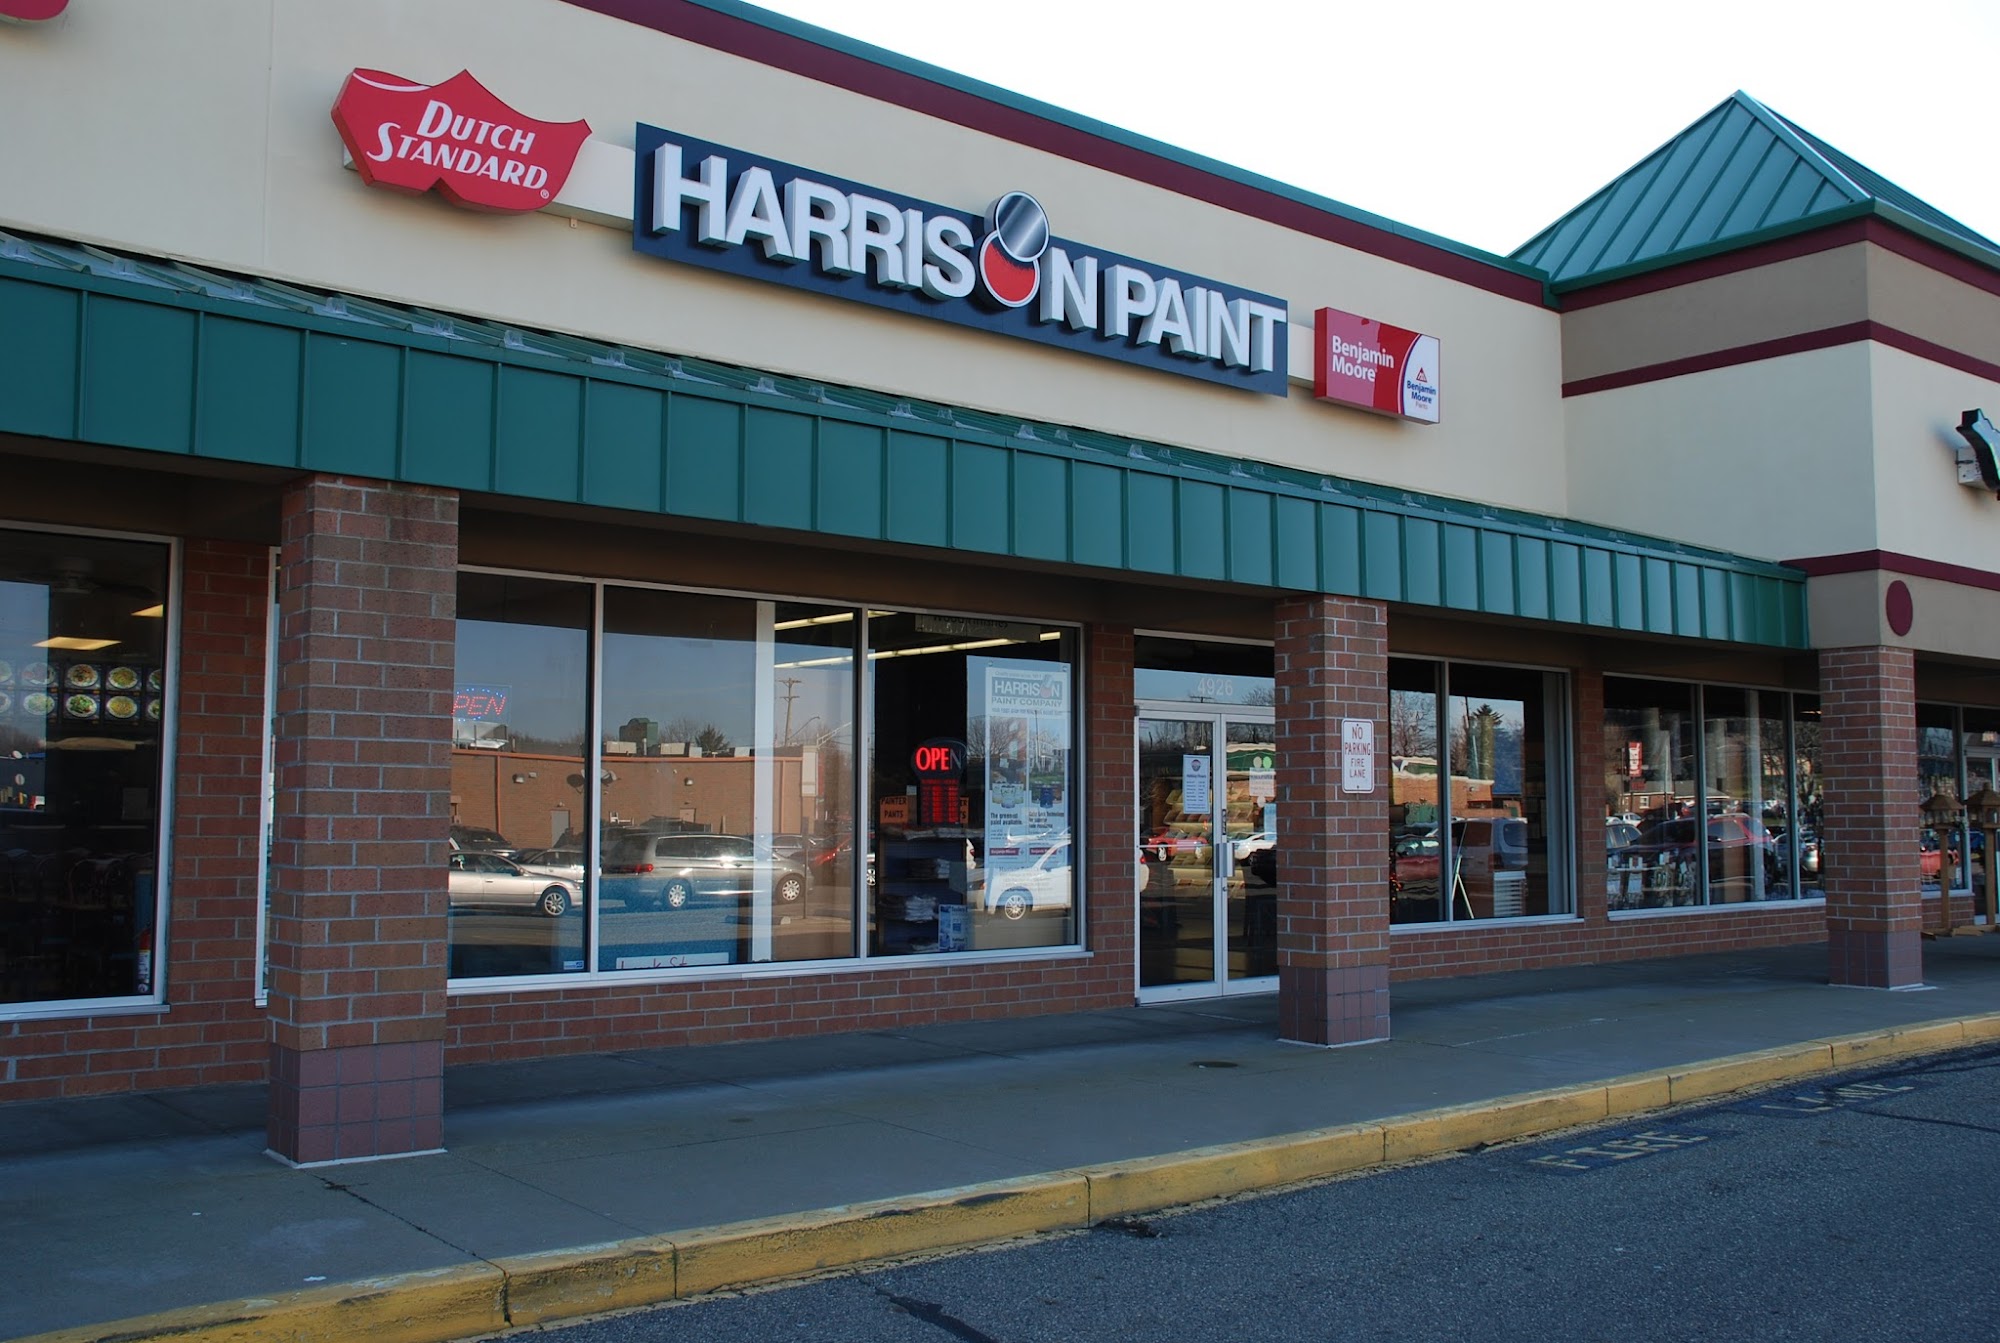 Harrison Paint Company - Retail & Design Center